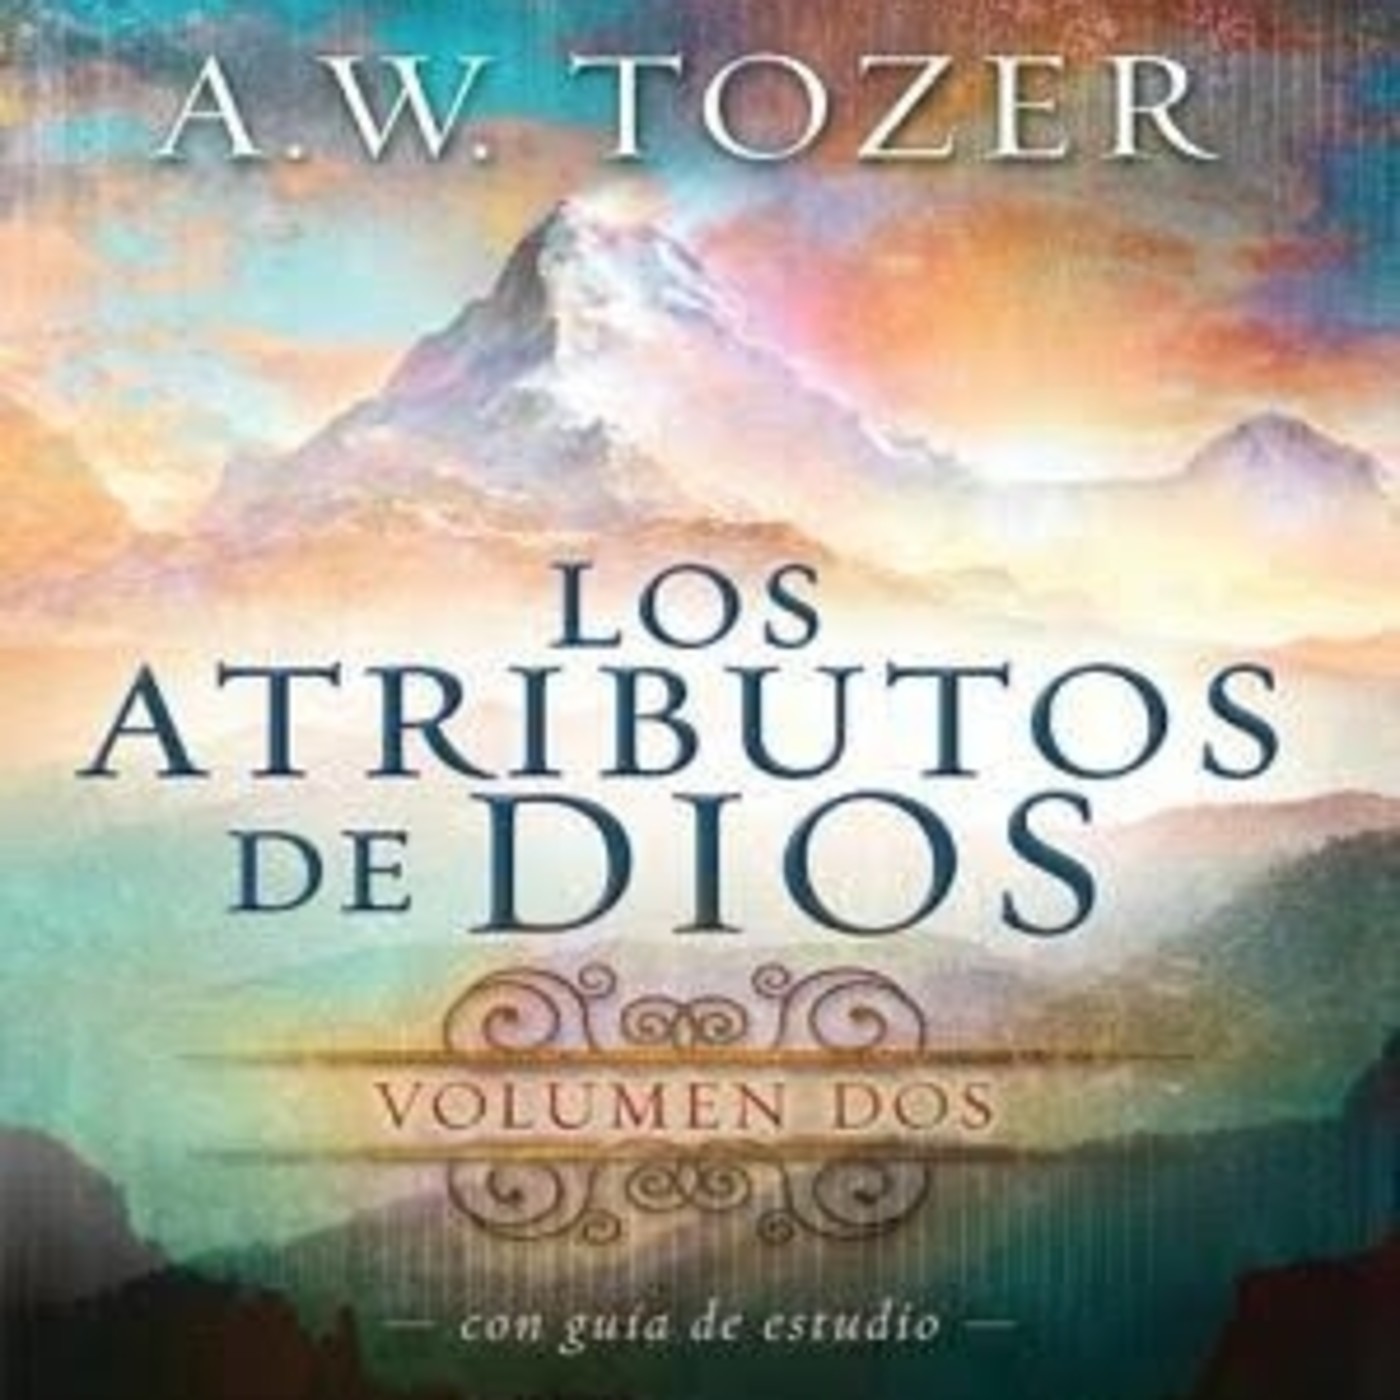 Los Atributos de Dios vol. 2 - A. W. Tozer